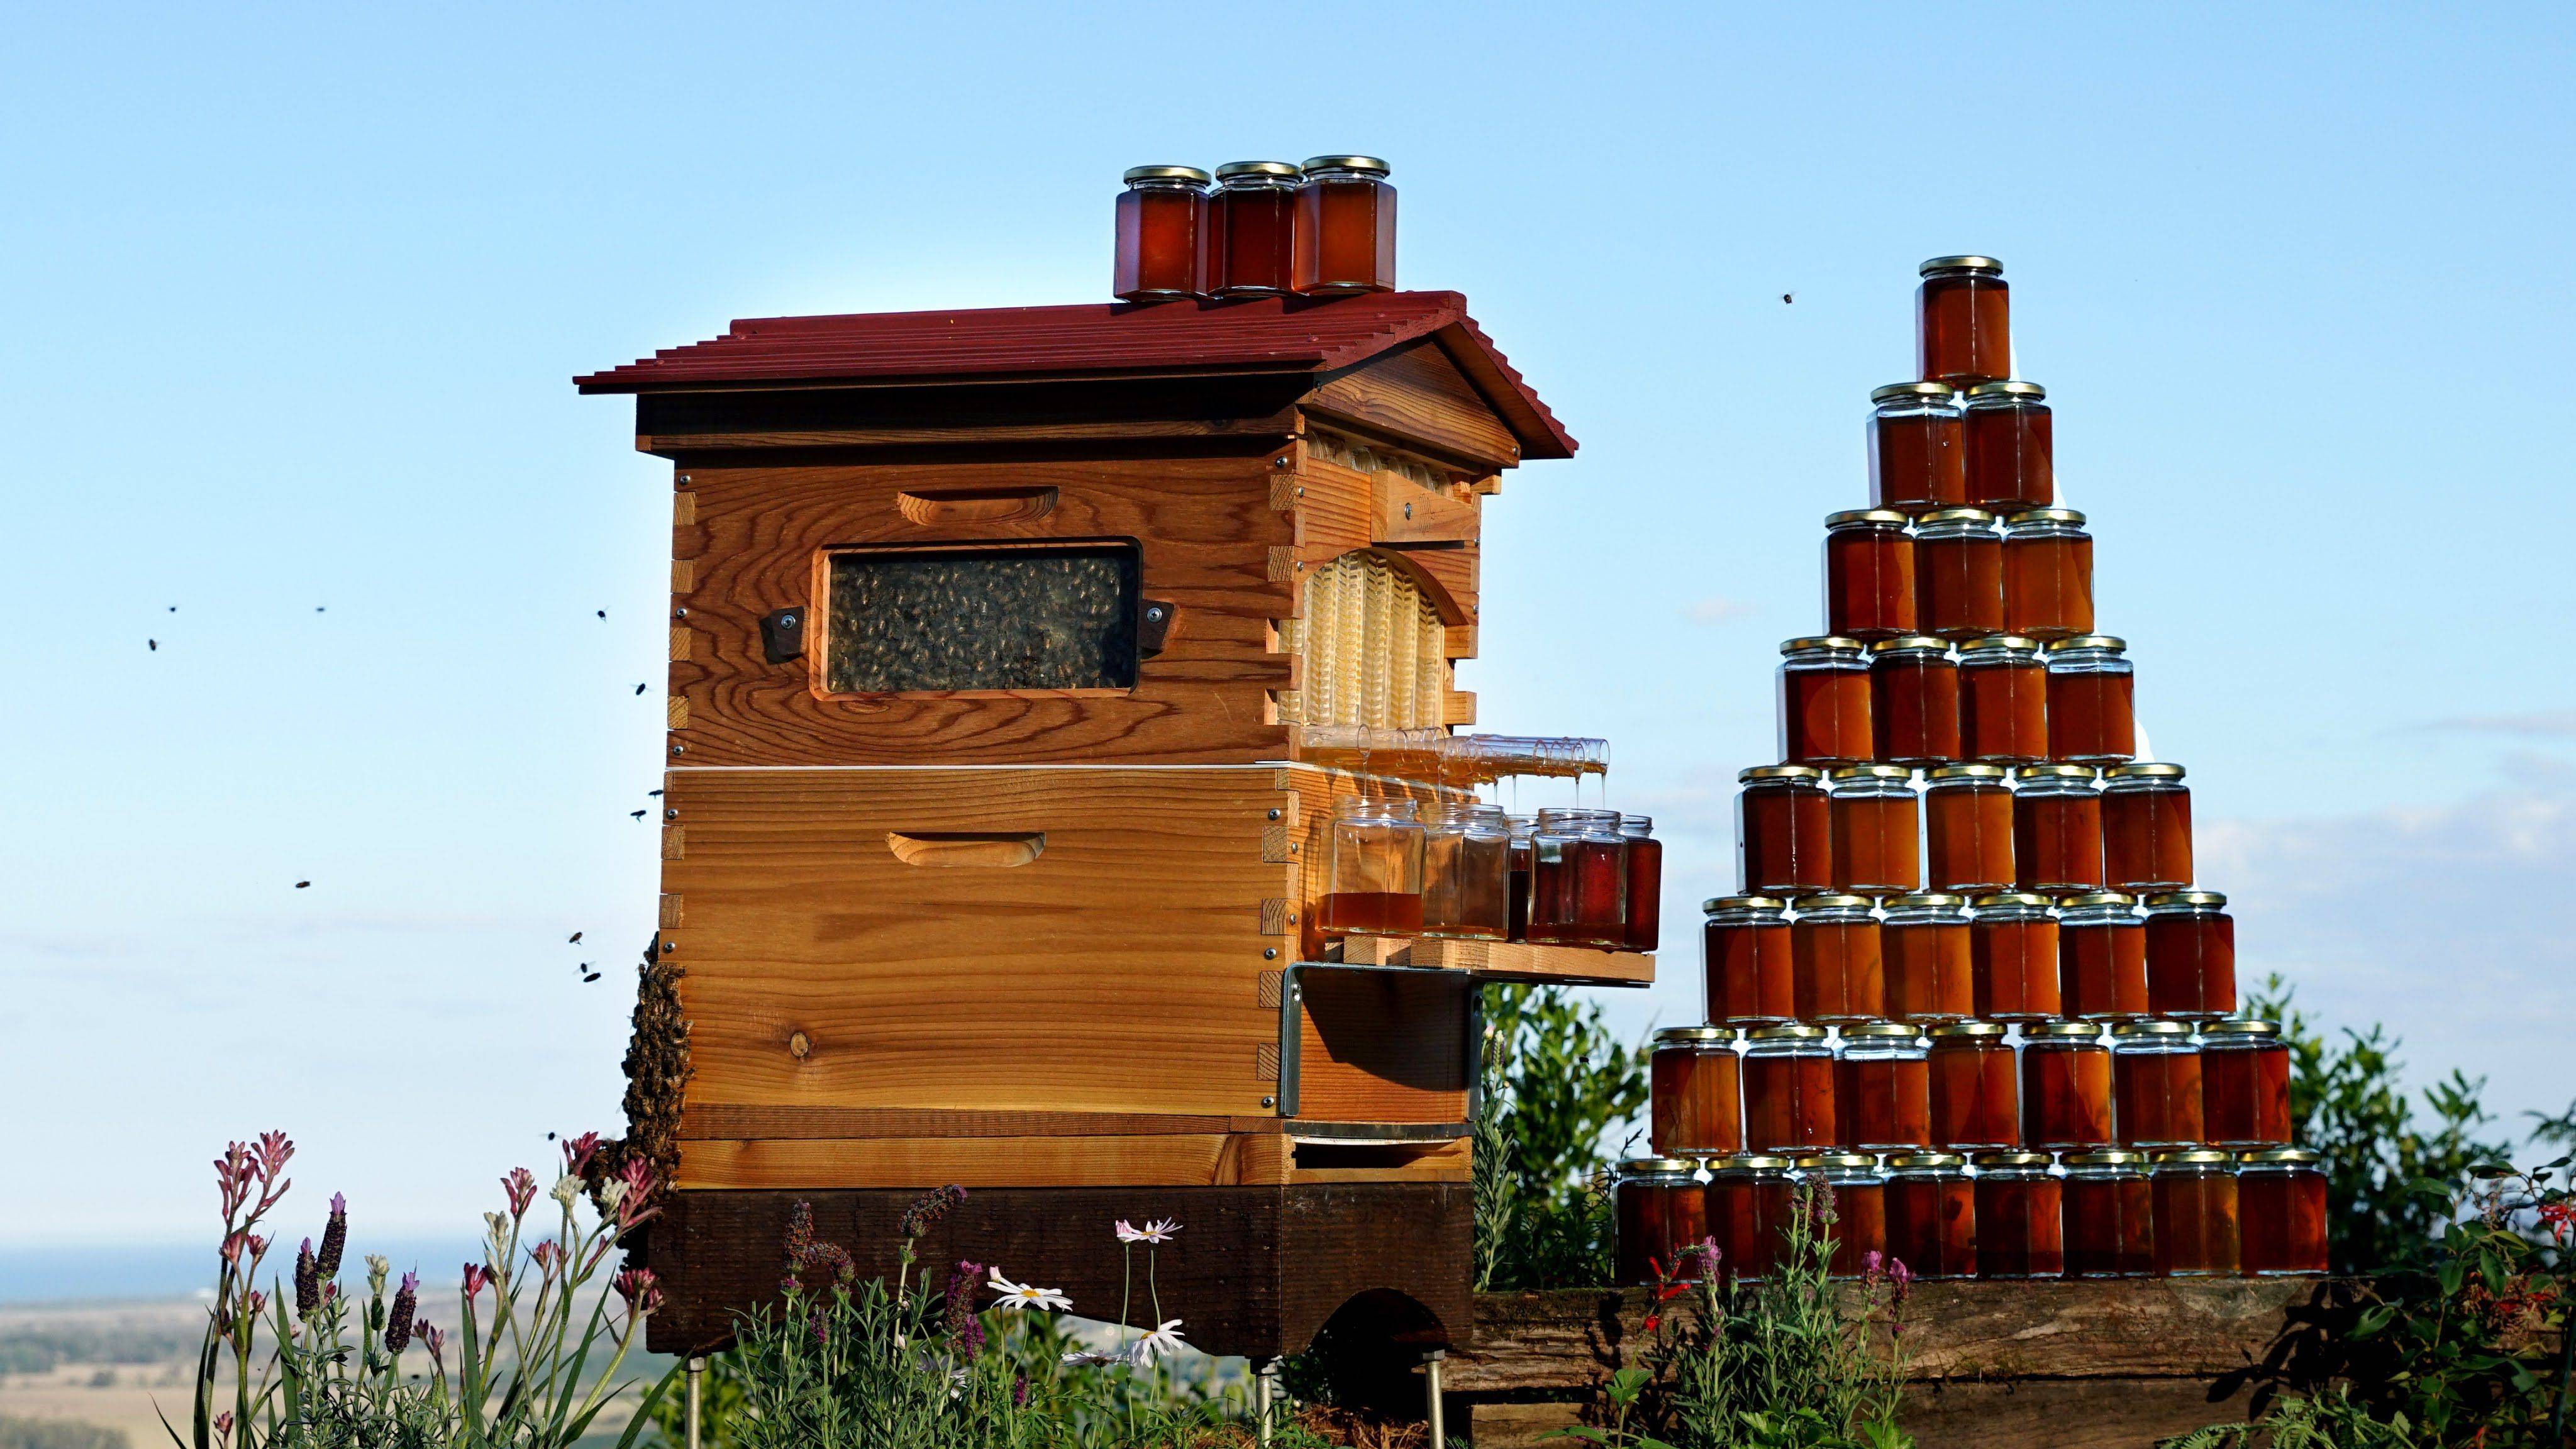 Пасечники из австралии создали автоматический улей. улей, из которого мёд вытекает сам